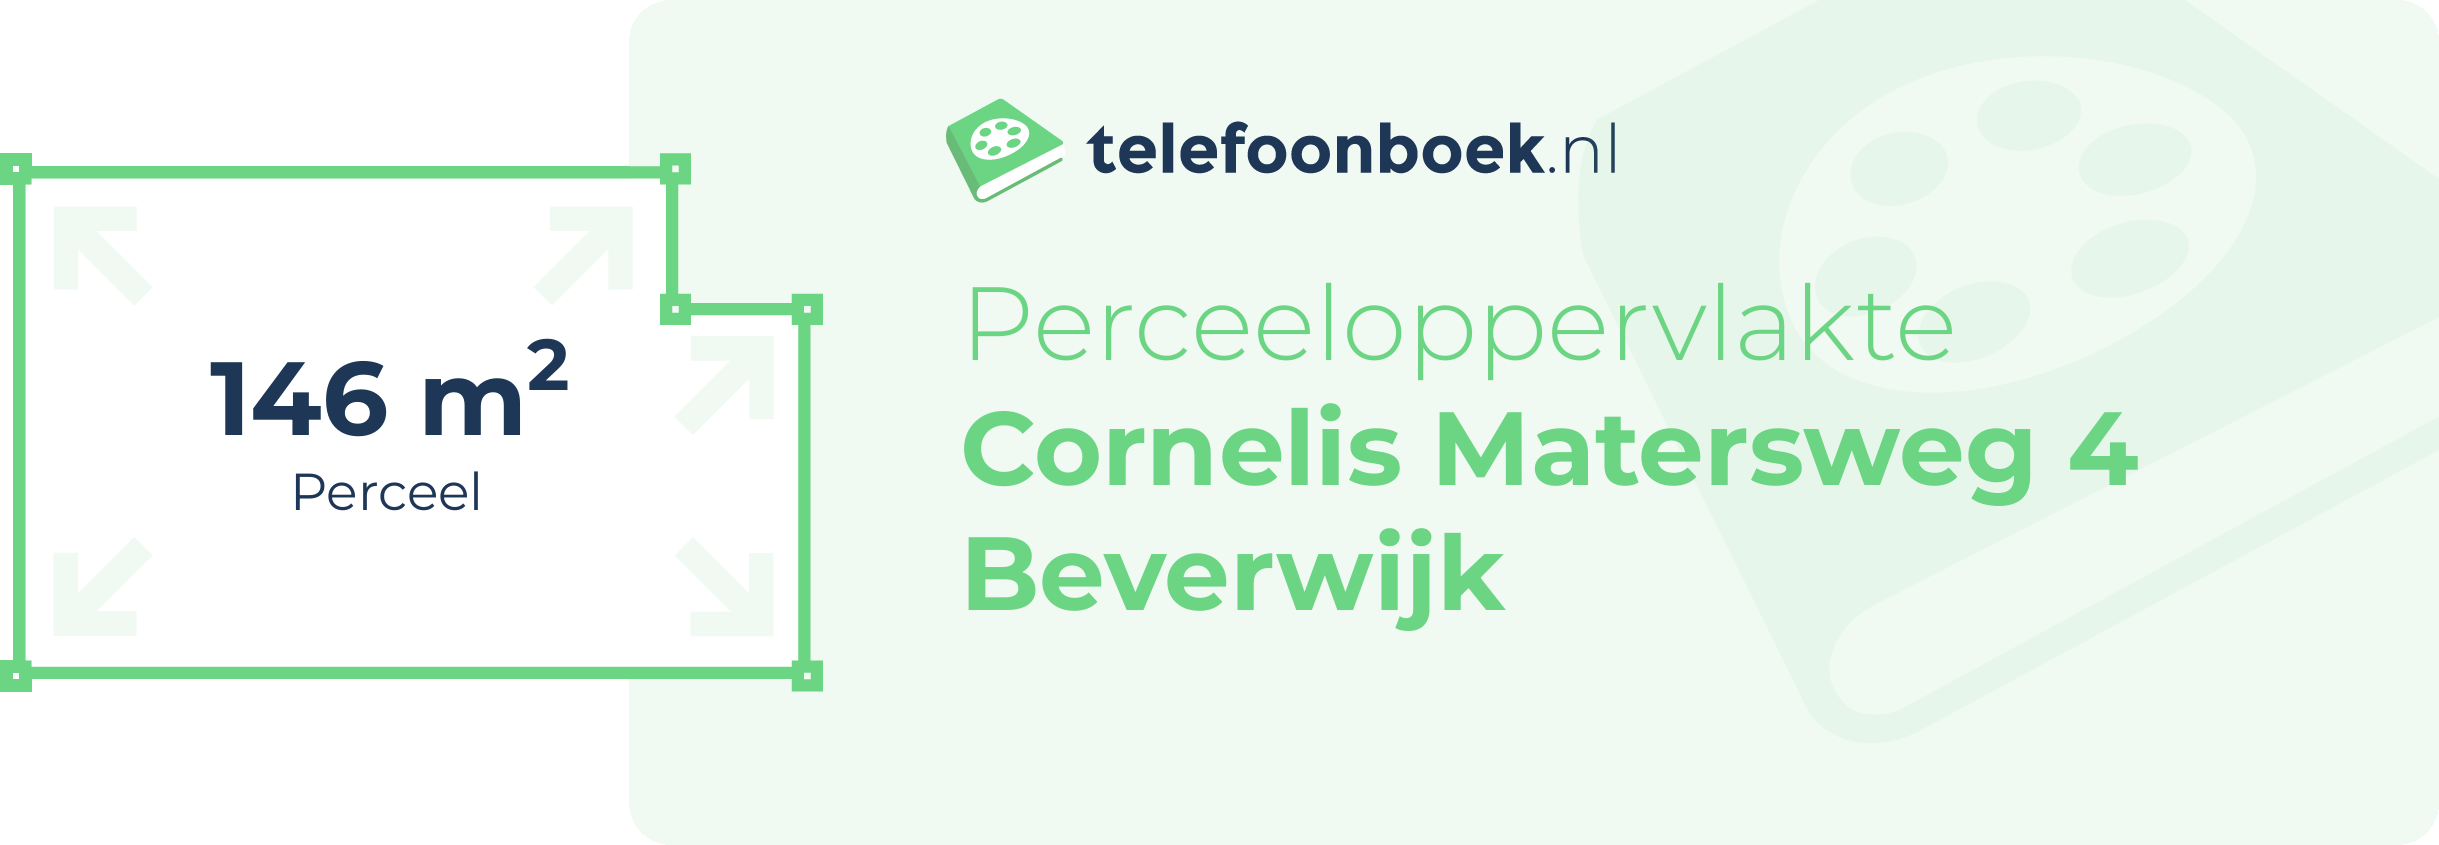 Perceeloppervlakte Cornelis Matersweg 4 Beverwijk